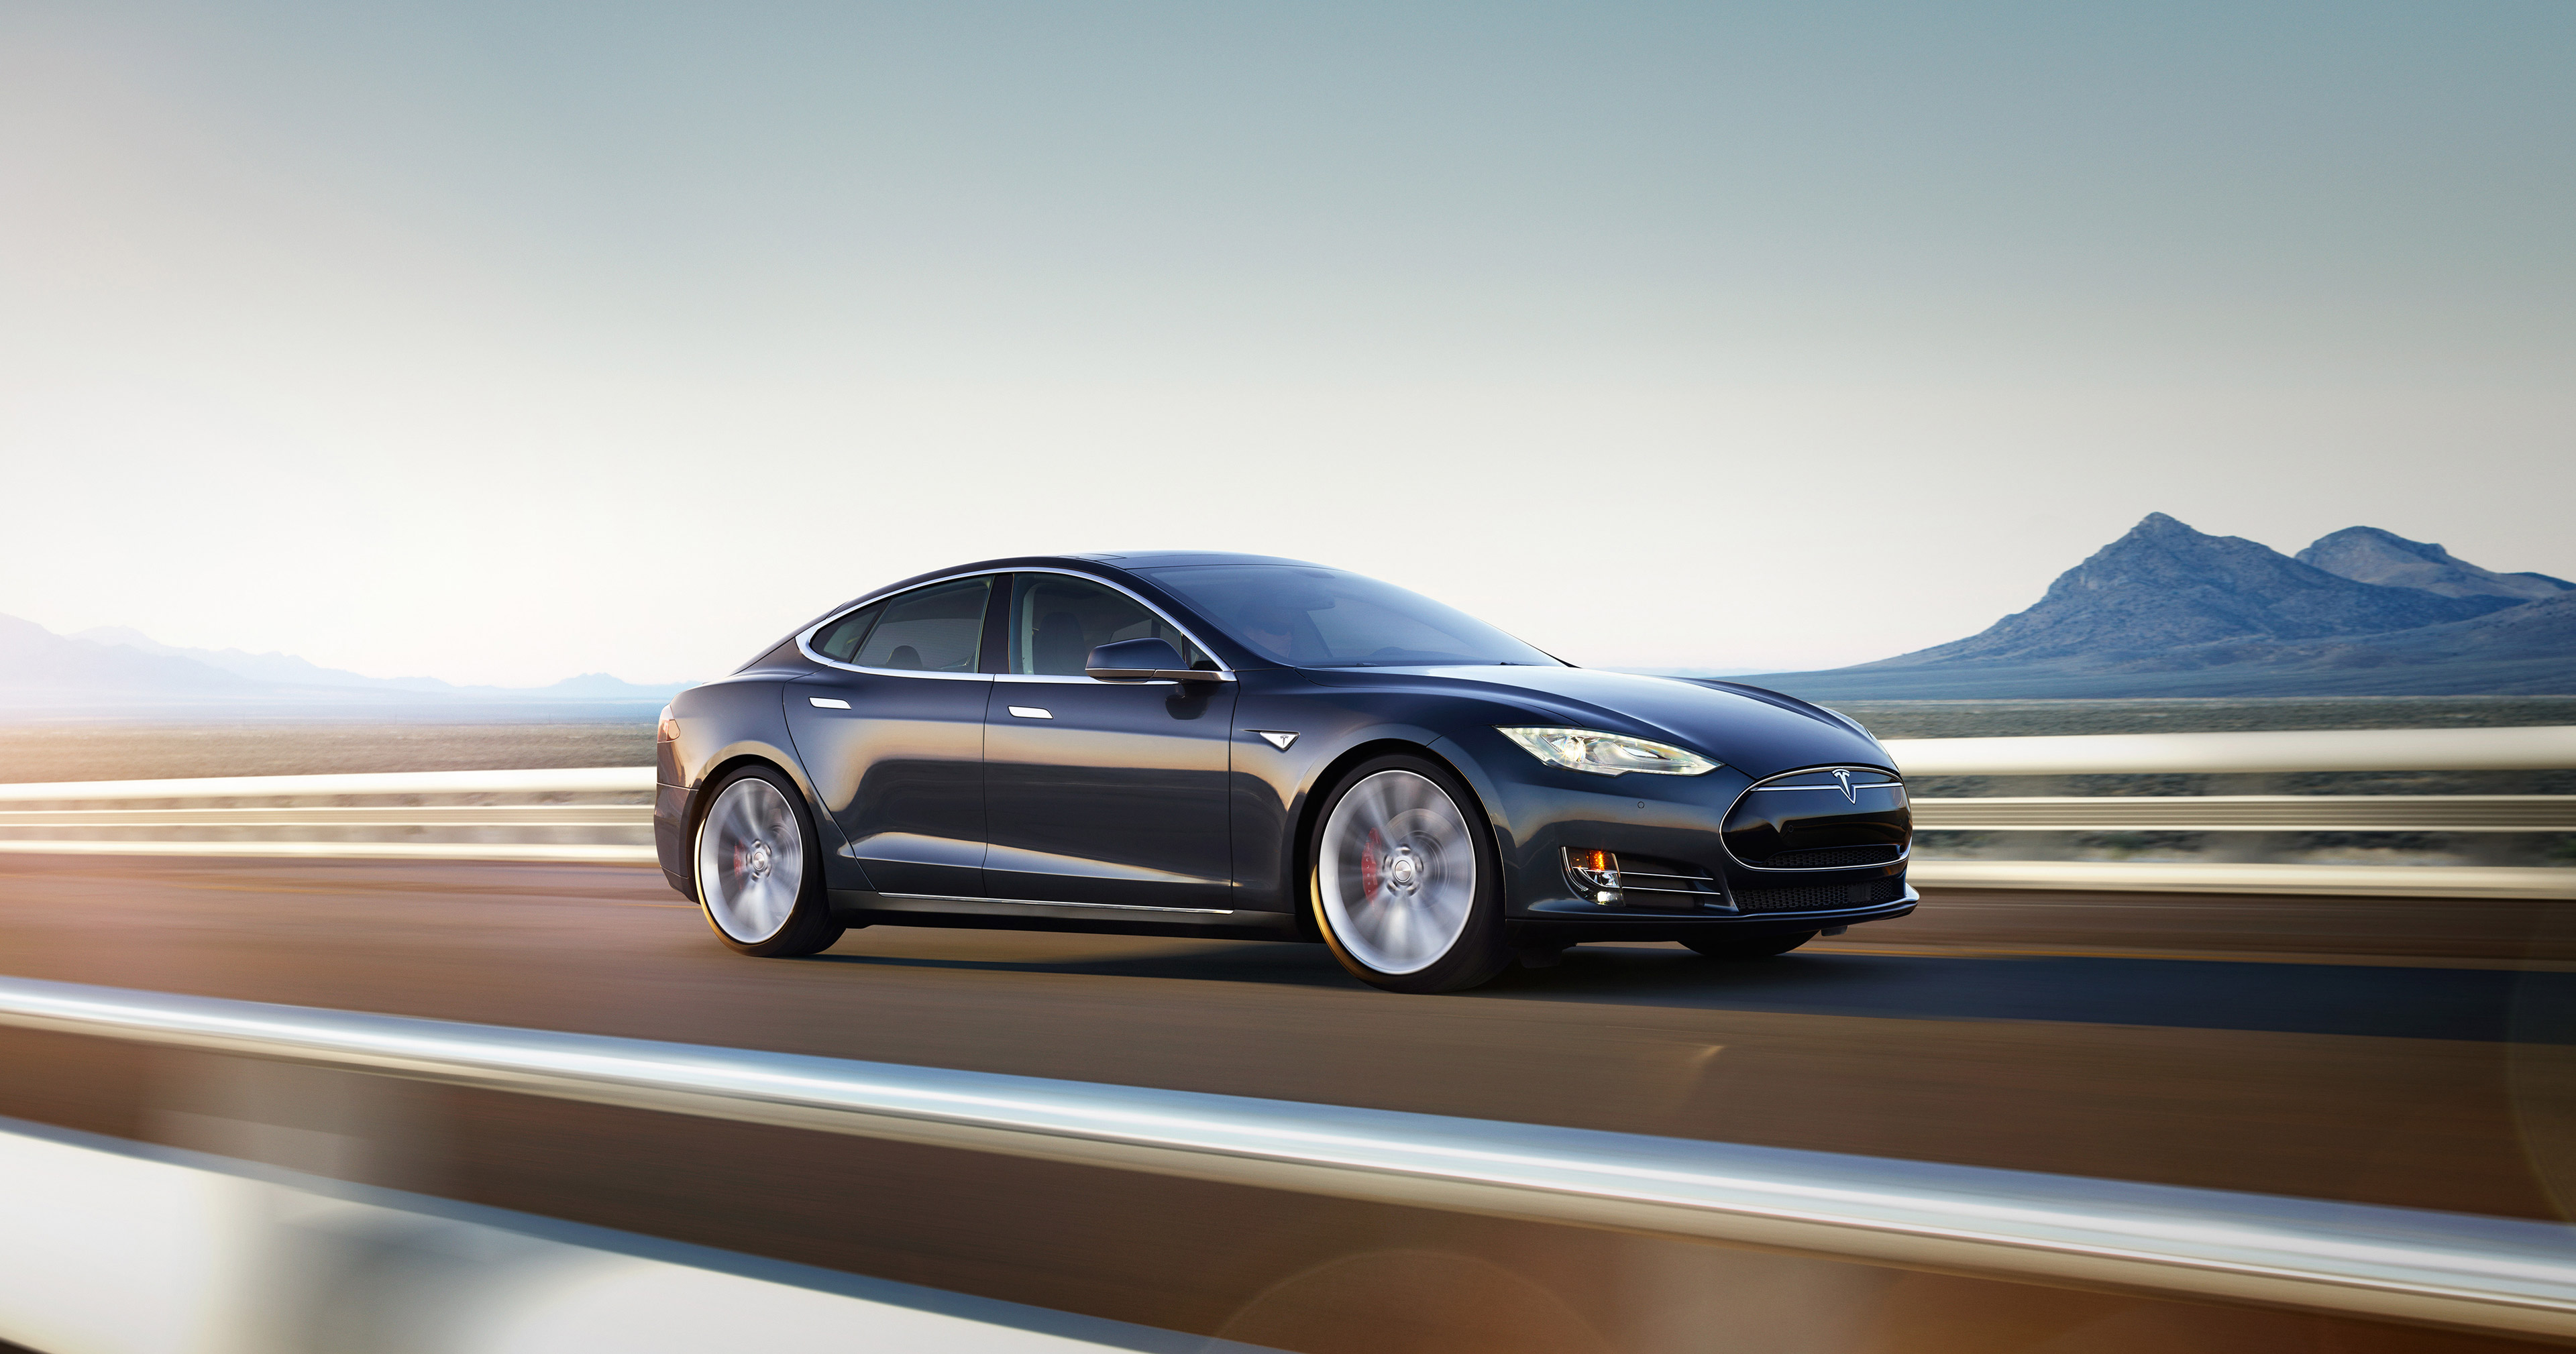 Immagine pubblicata in relazione al seguente contenuto: Apple ha in corso un progetto per la realizzazione di un'auto elettrica | Nome immagine: news22224_Tesla-Dual-Motor-S_1.jpg